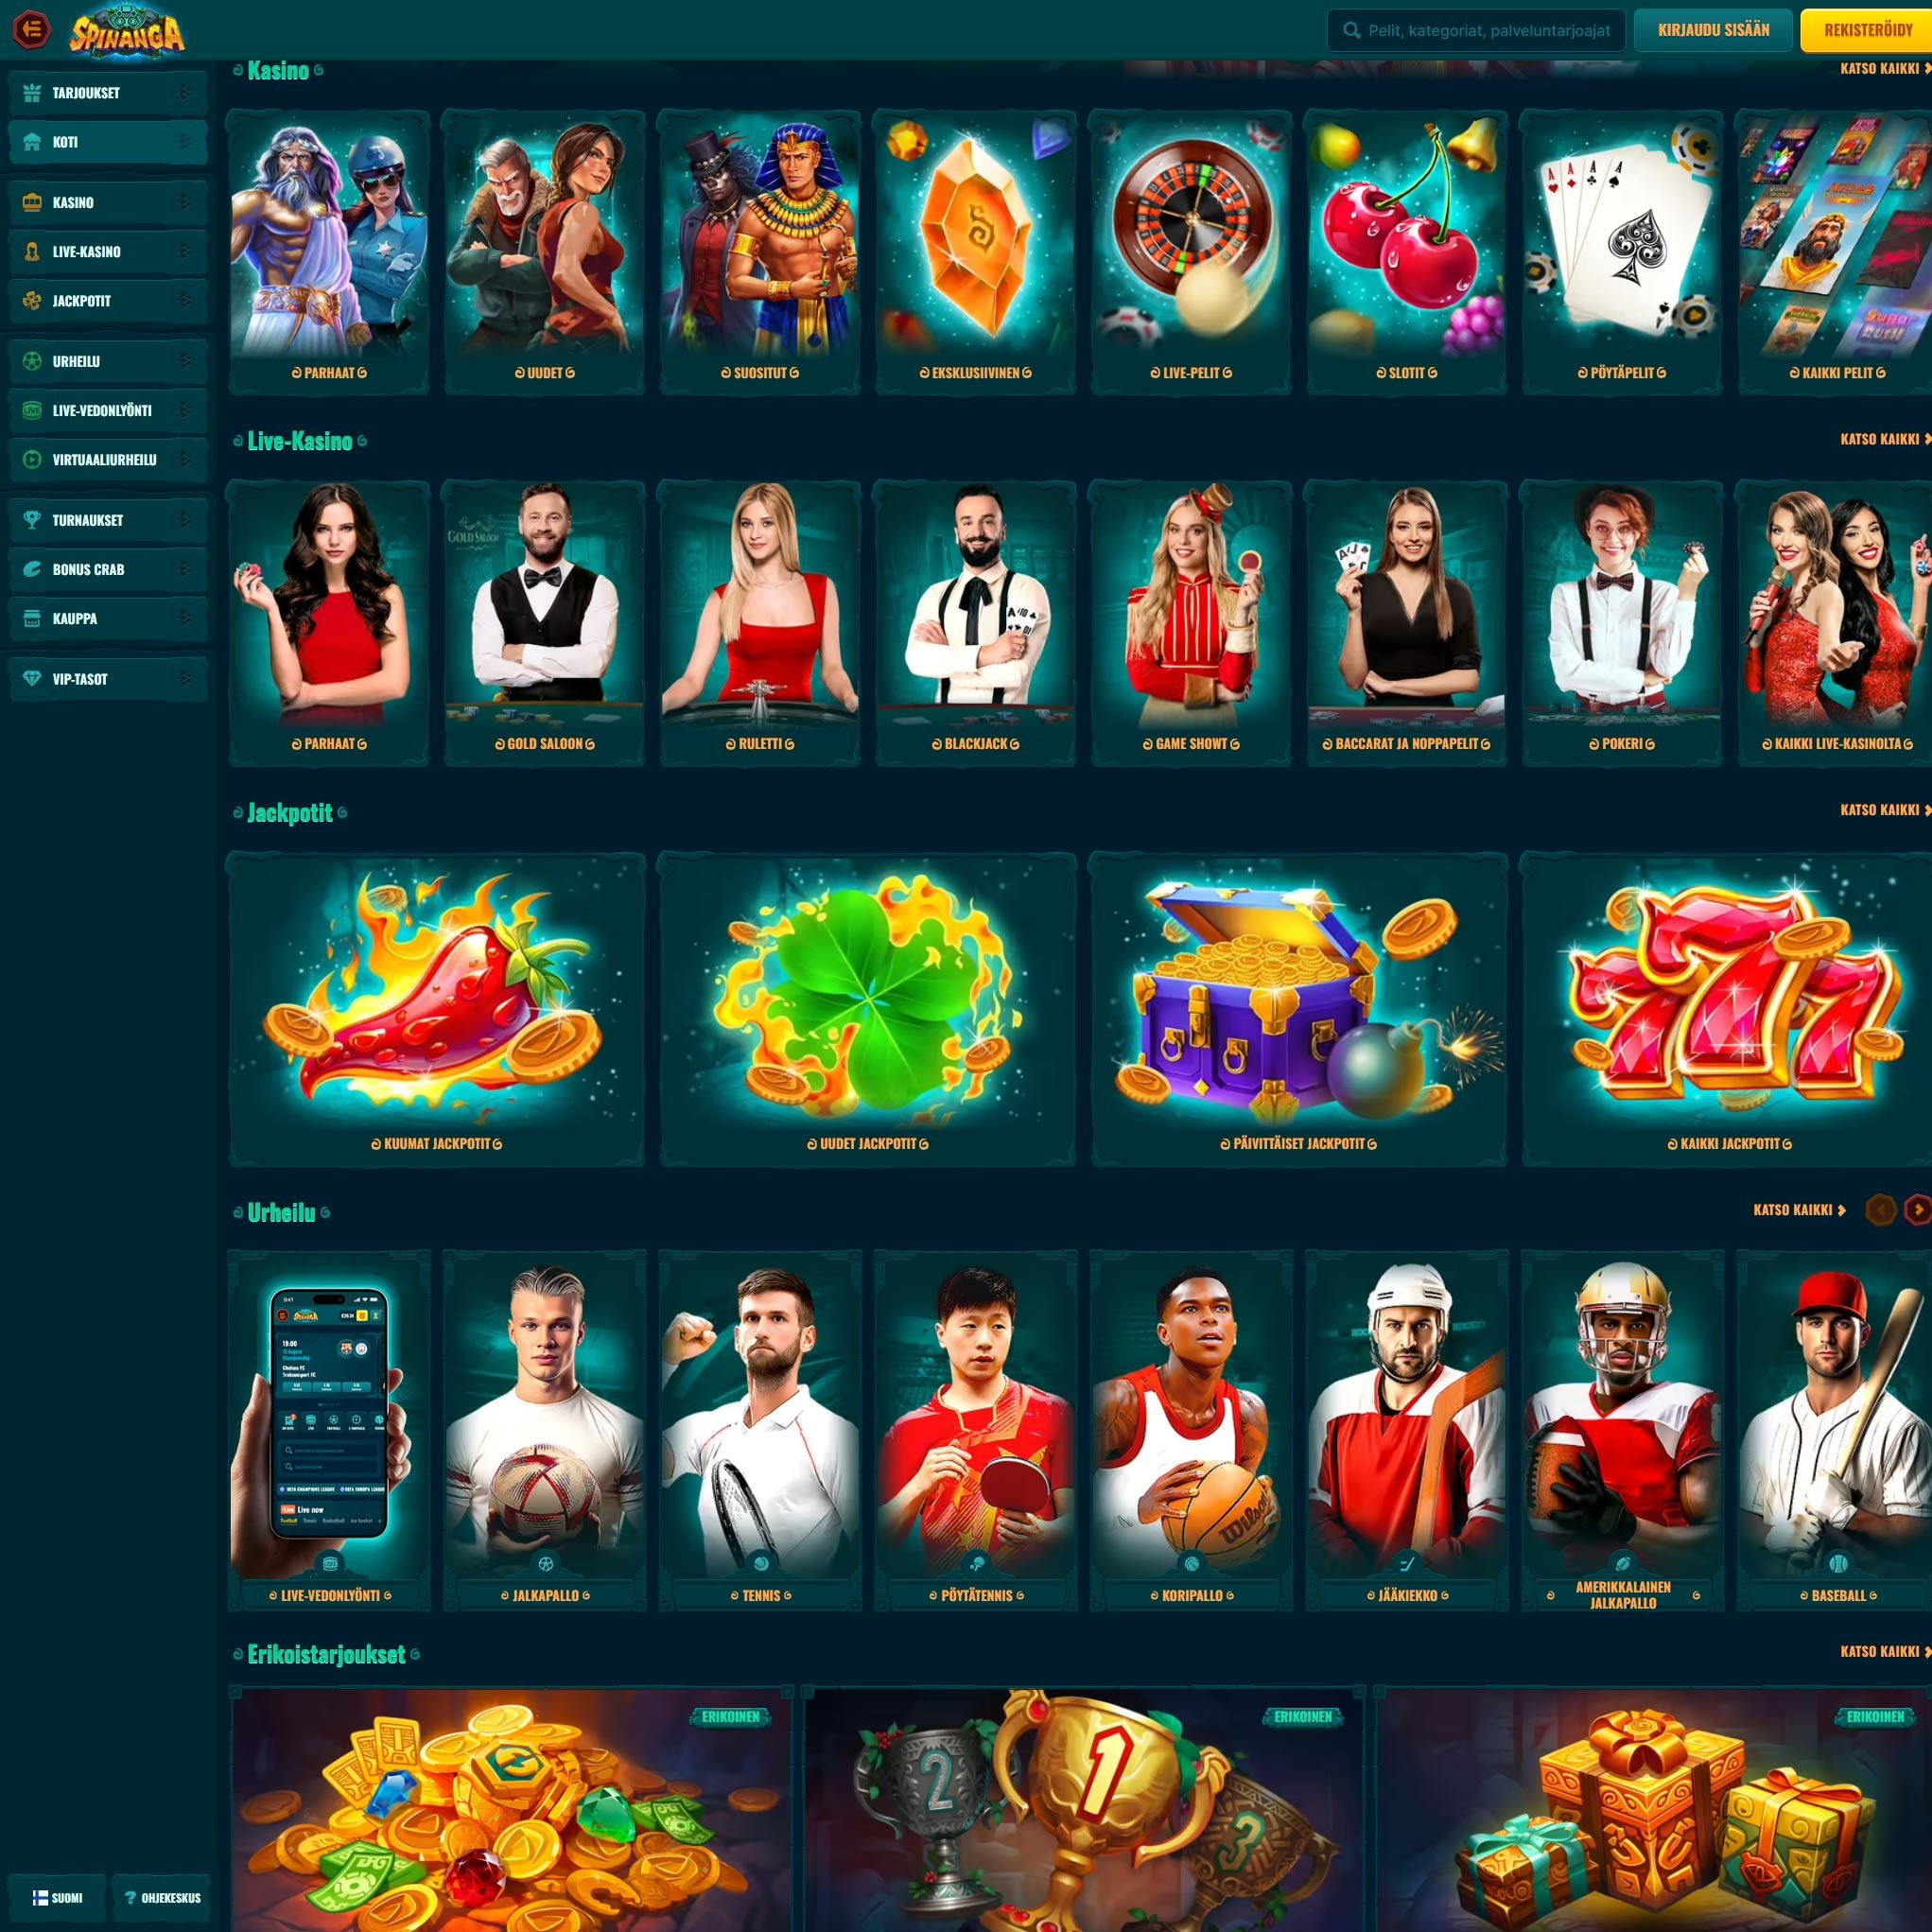 Suomalaiset nettikasinot tarjoavat monia hyötyjä pelaajille. Spinanga Casino on suosittelemamme nettikasino, jolle voit lunastaa bonuksia ja muita etuja.